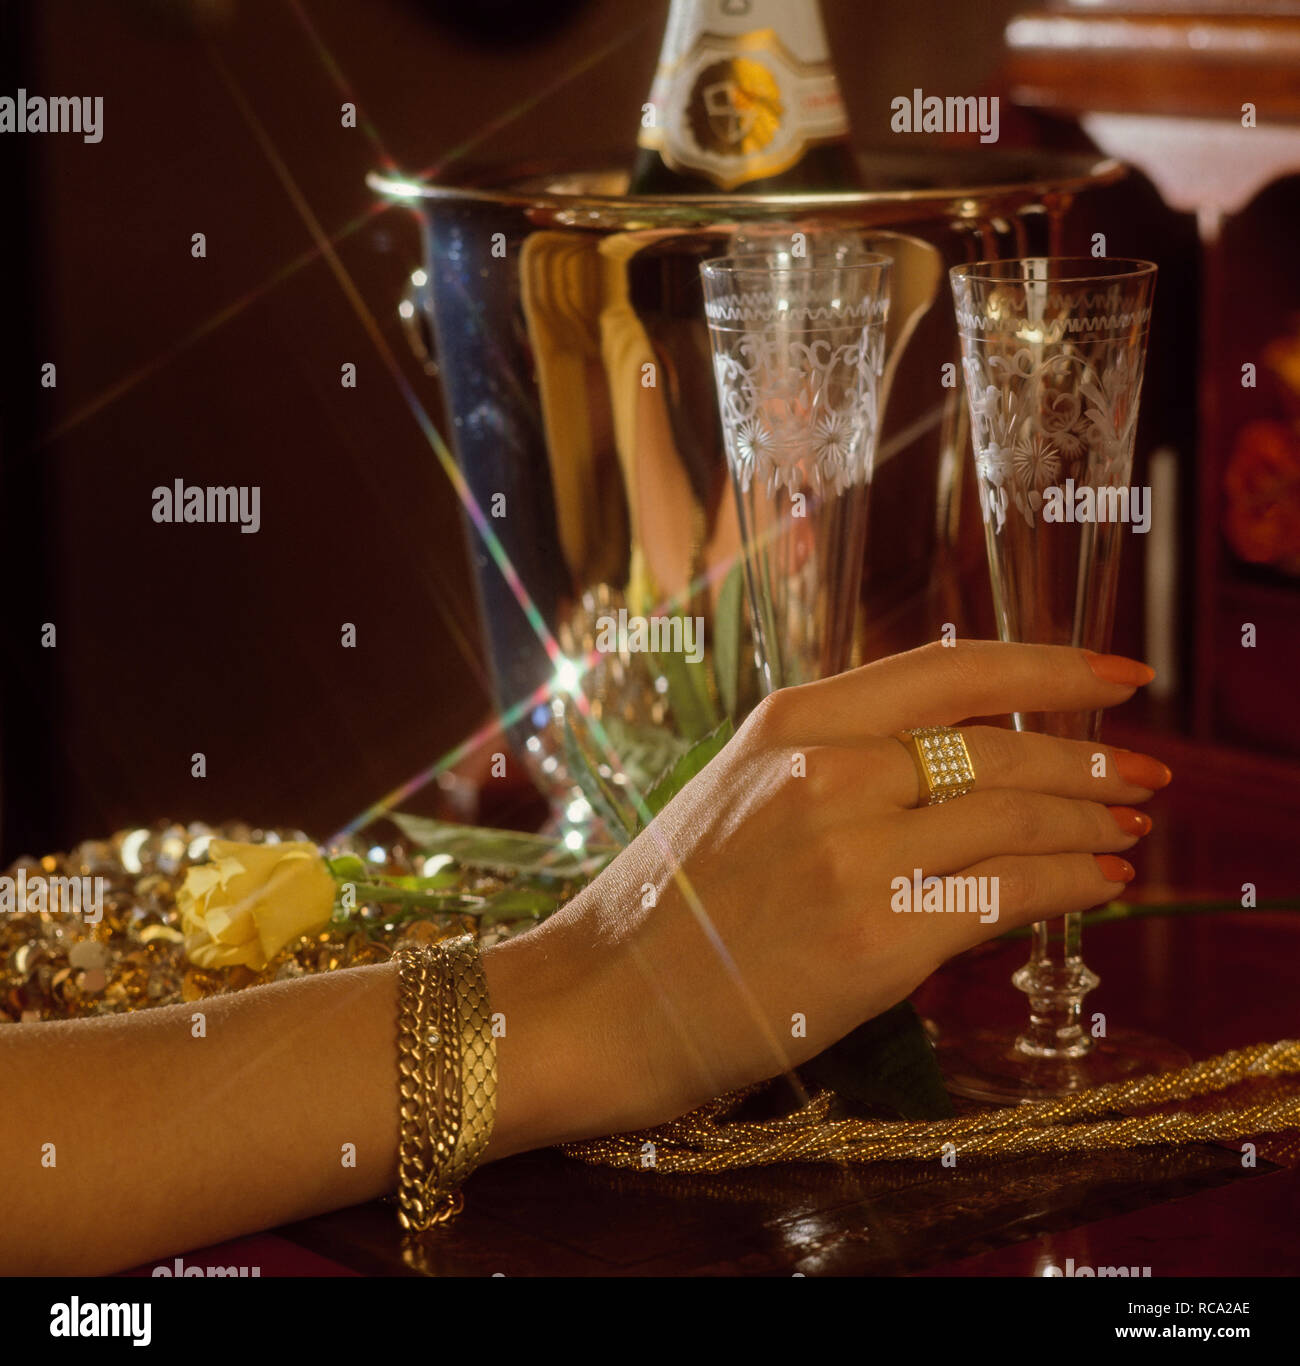 Frauenhand berührt Sektglas, HG Sektkübel, festlich | femmina toccando a mano vetro di champagne, celebrazione, event.Caption locale *** Modelrelease vorh Foto Stock